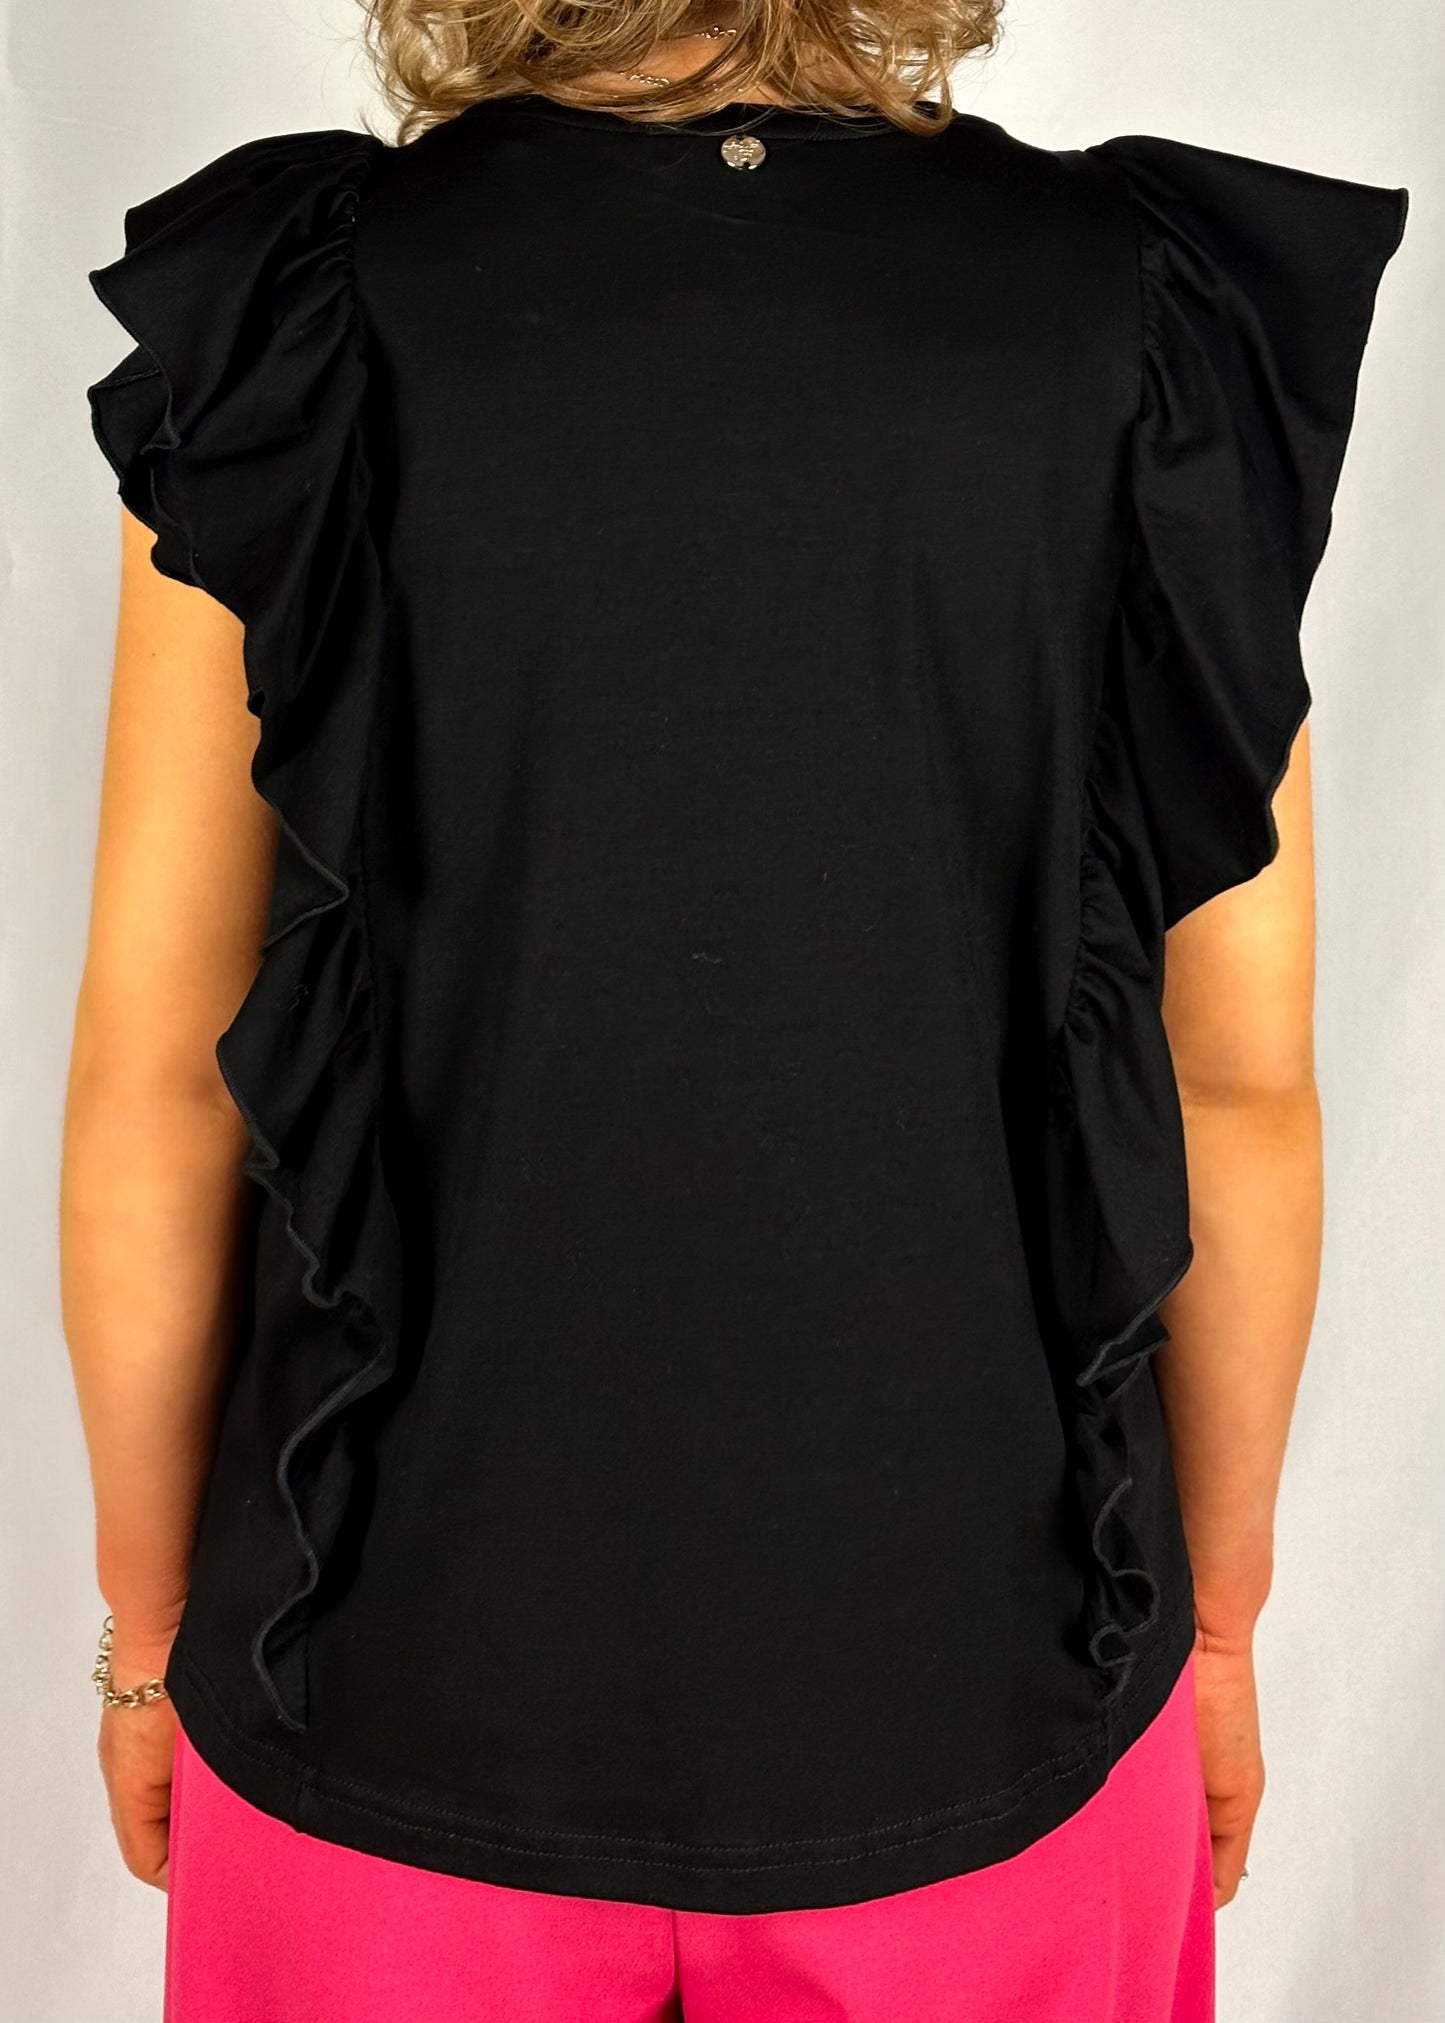 T-shirt nera con dettagli gioiello sul collo